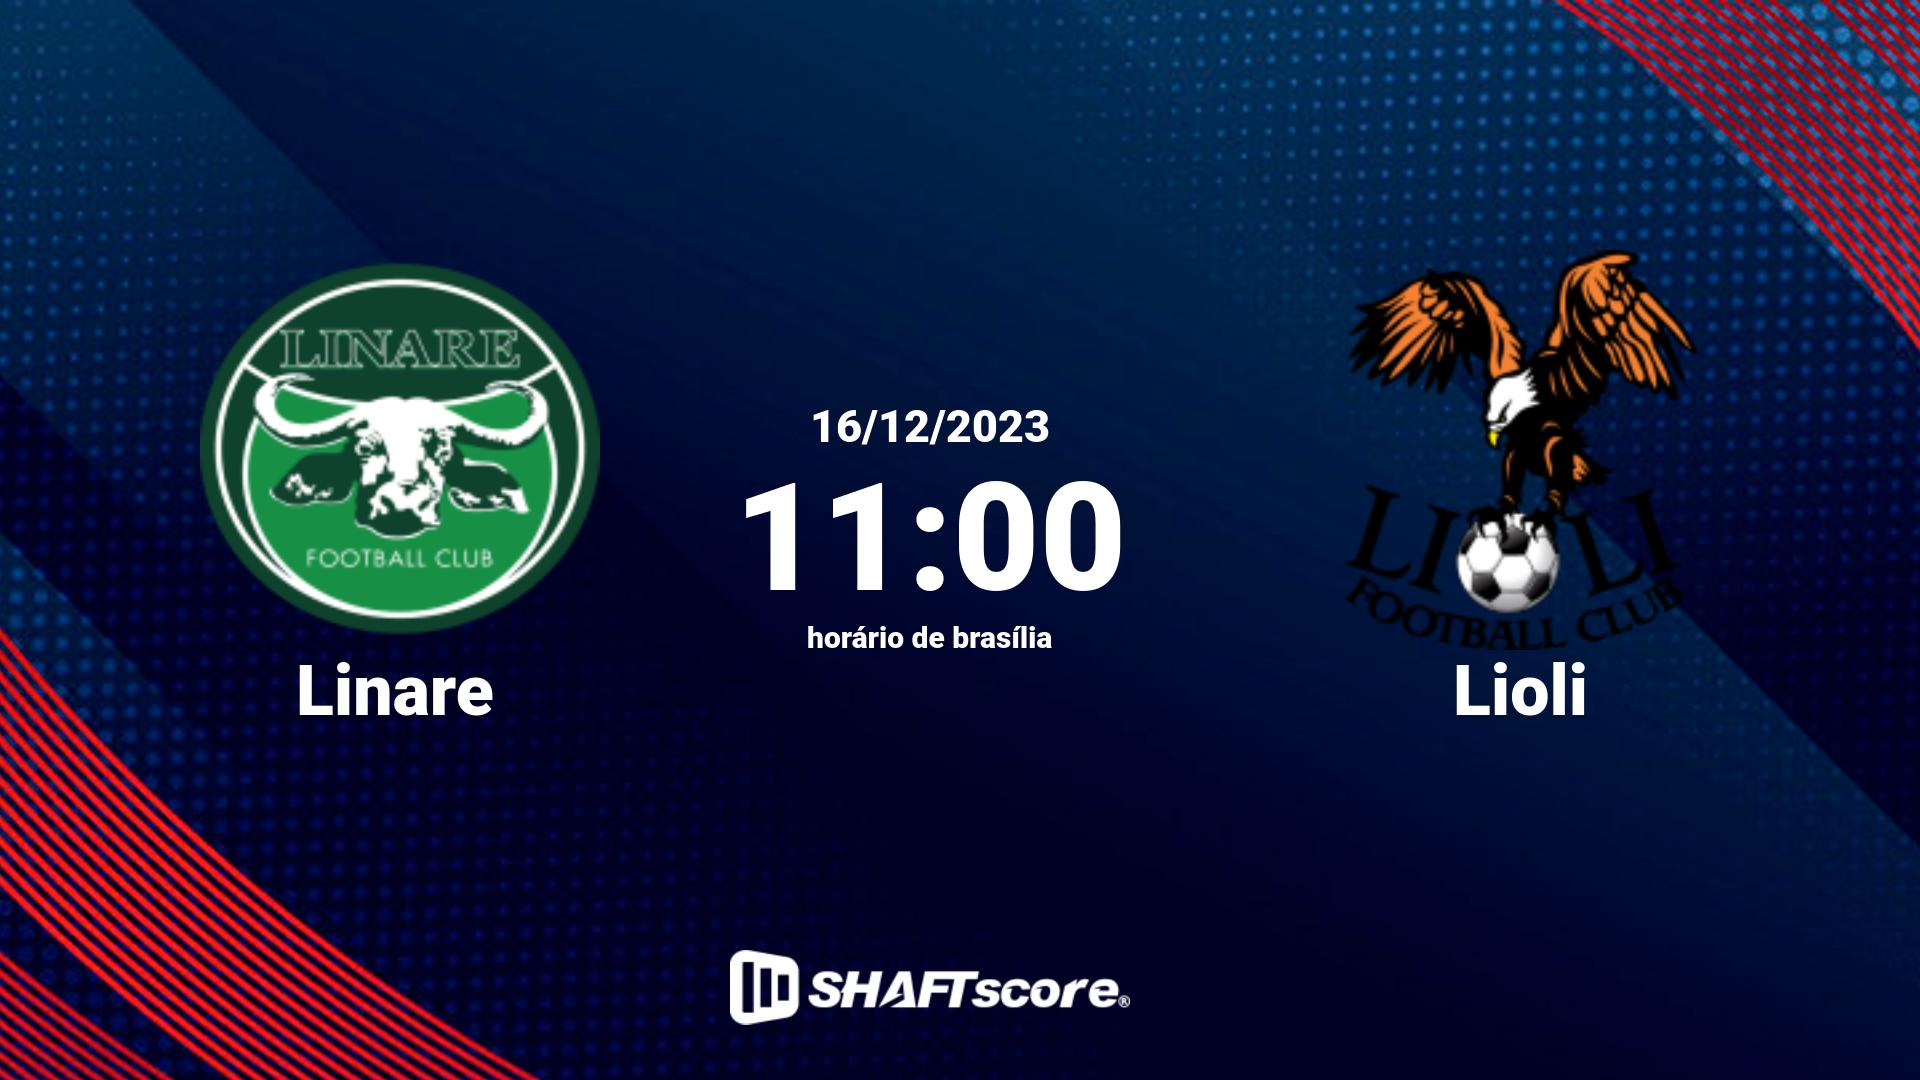 Estatísticas do jogo Linare vs Lioli 16.12 11:00